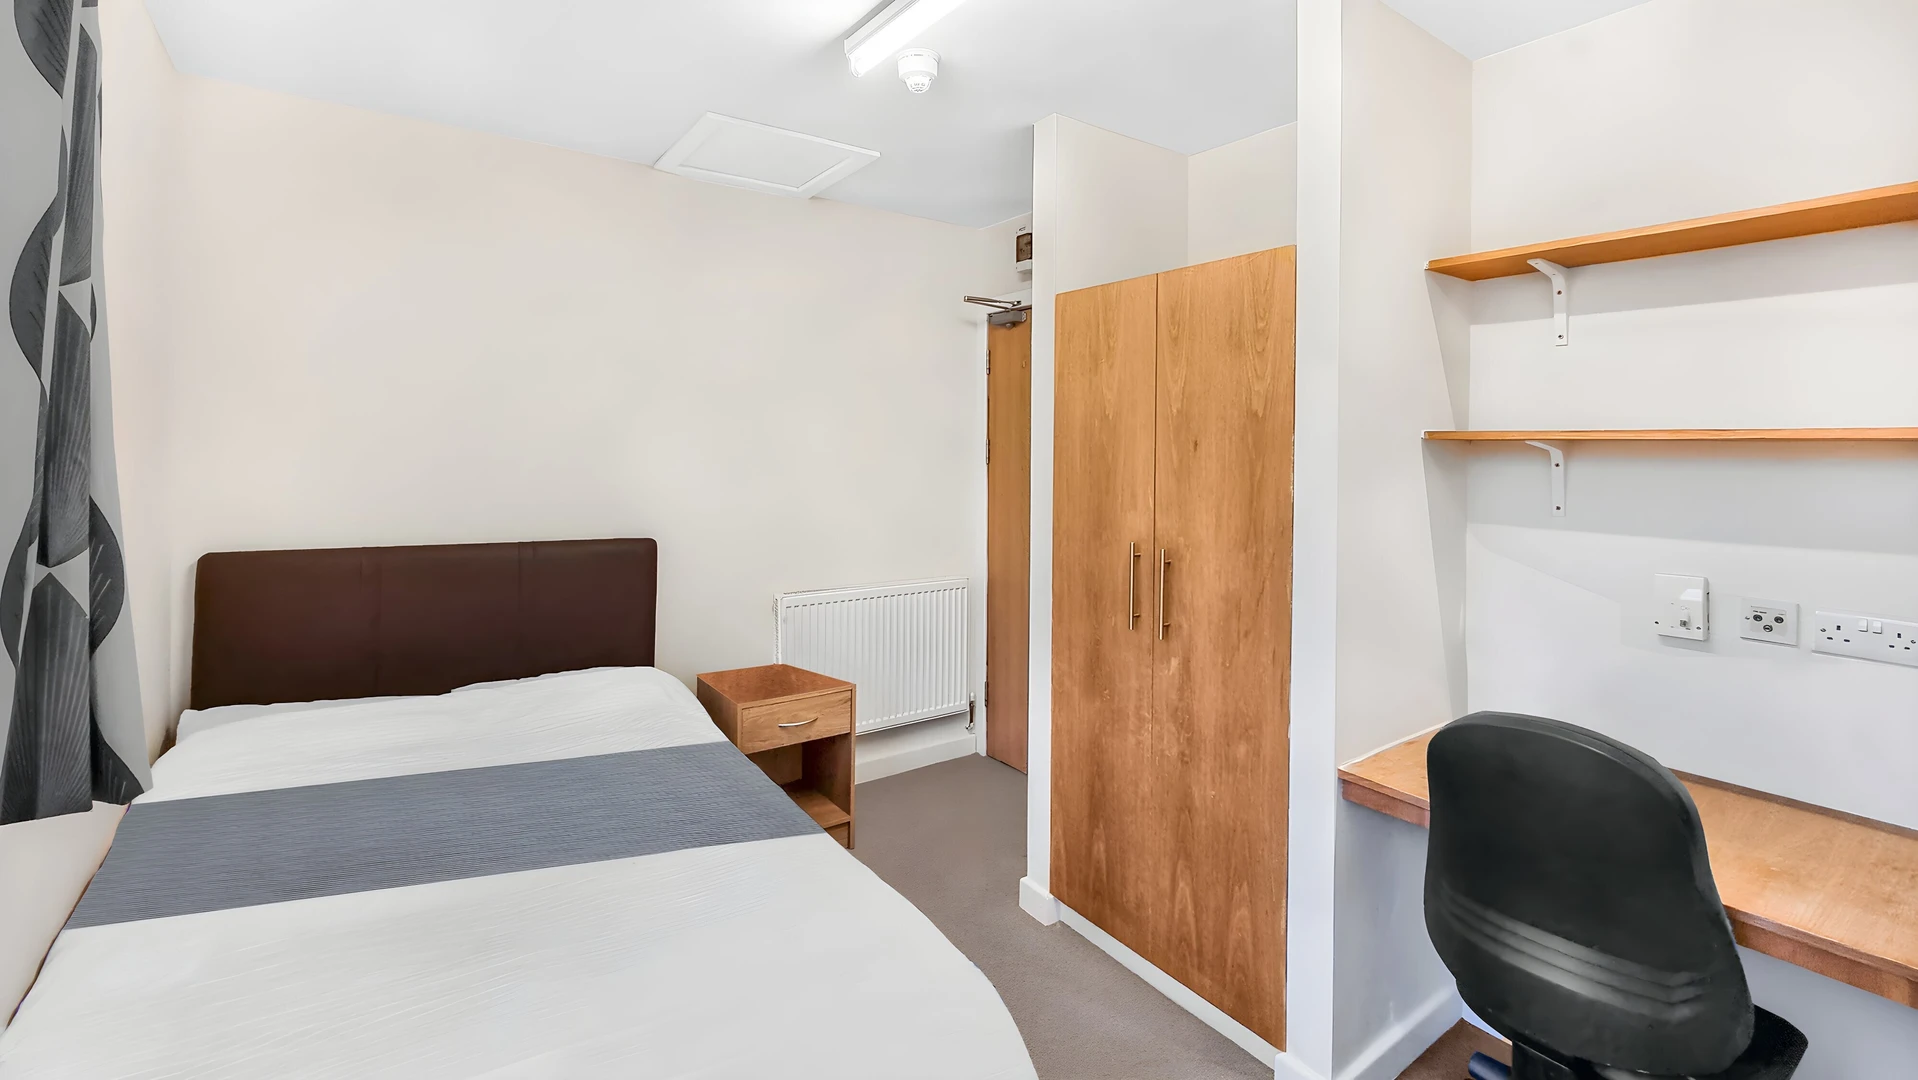 Alquiler de habitación en piso compartido en Stoke-on-trent